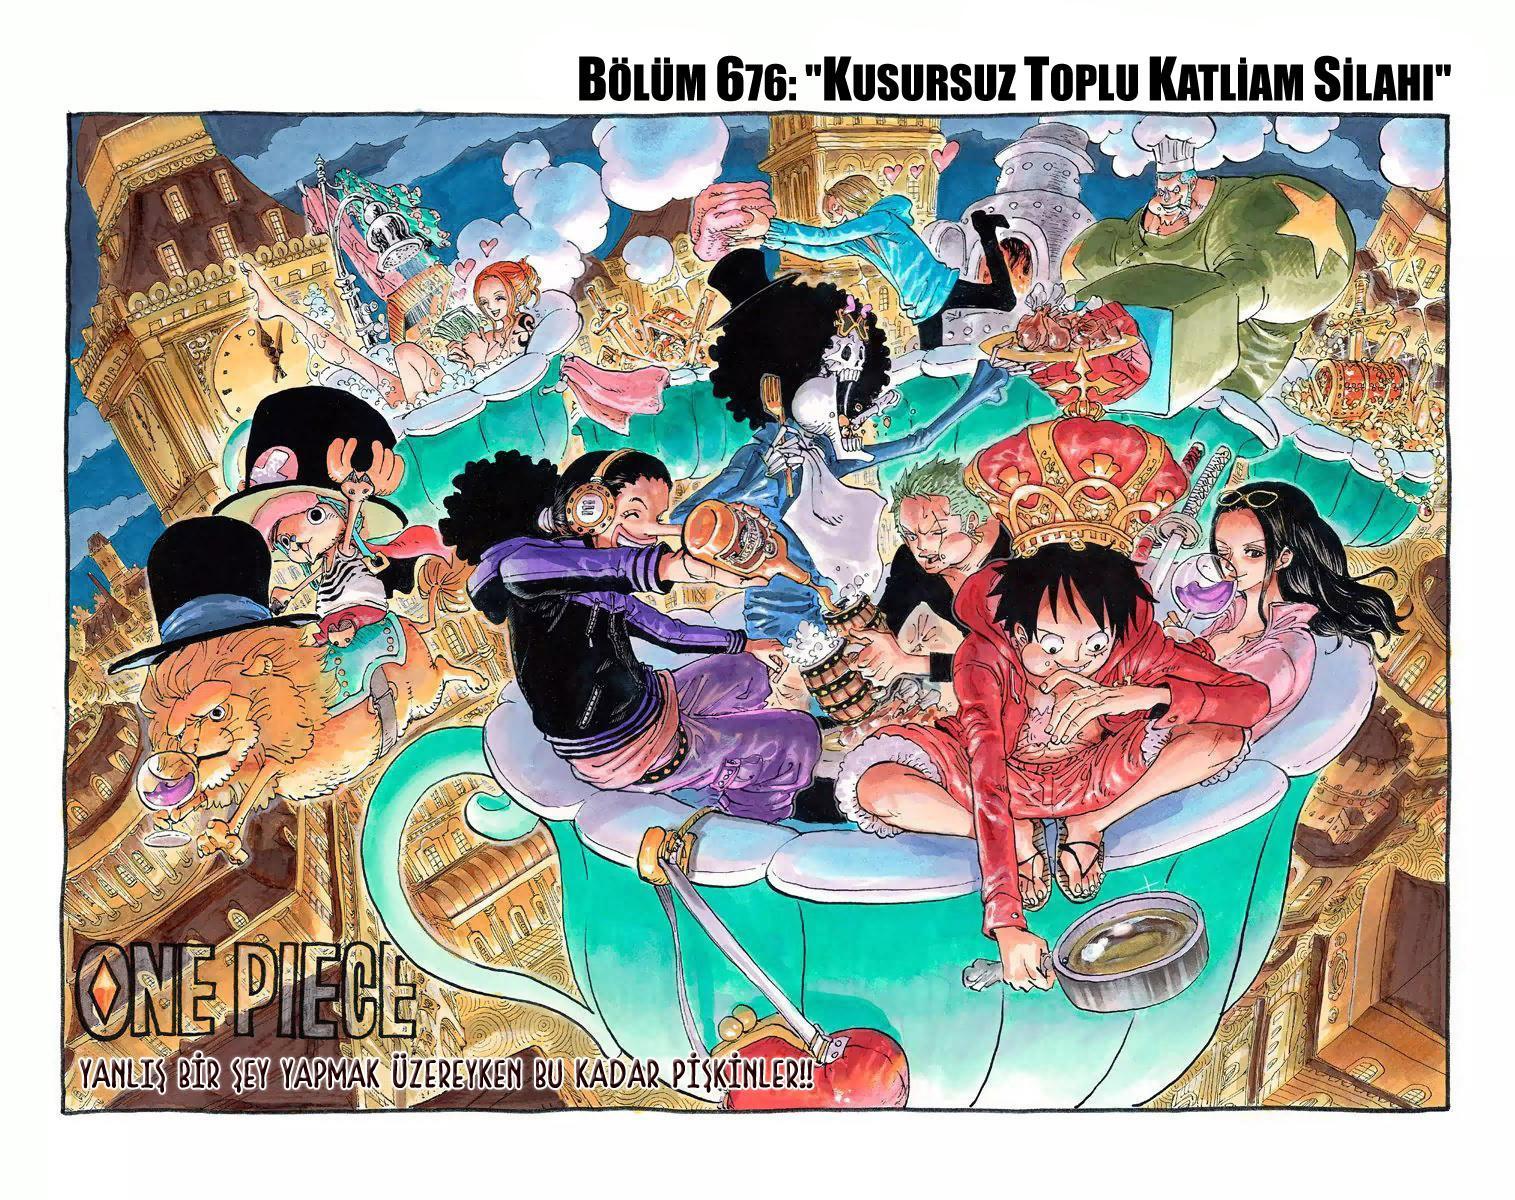 One Piece [Renkli] mangasının 676 bölümünün 2. sayfasını okuyorsunuz.